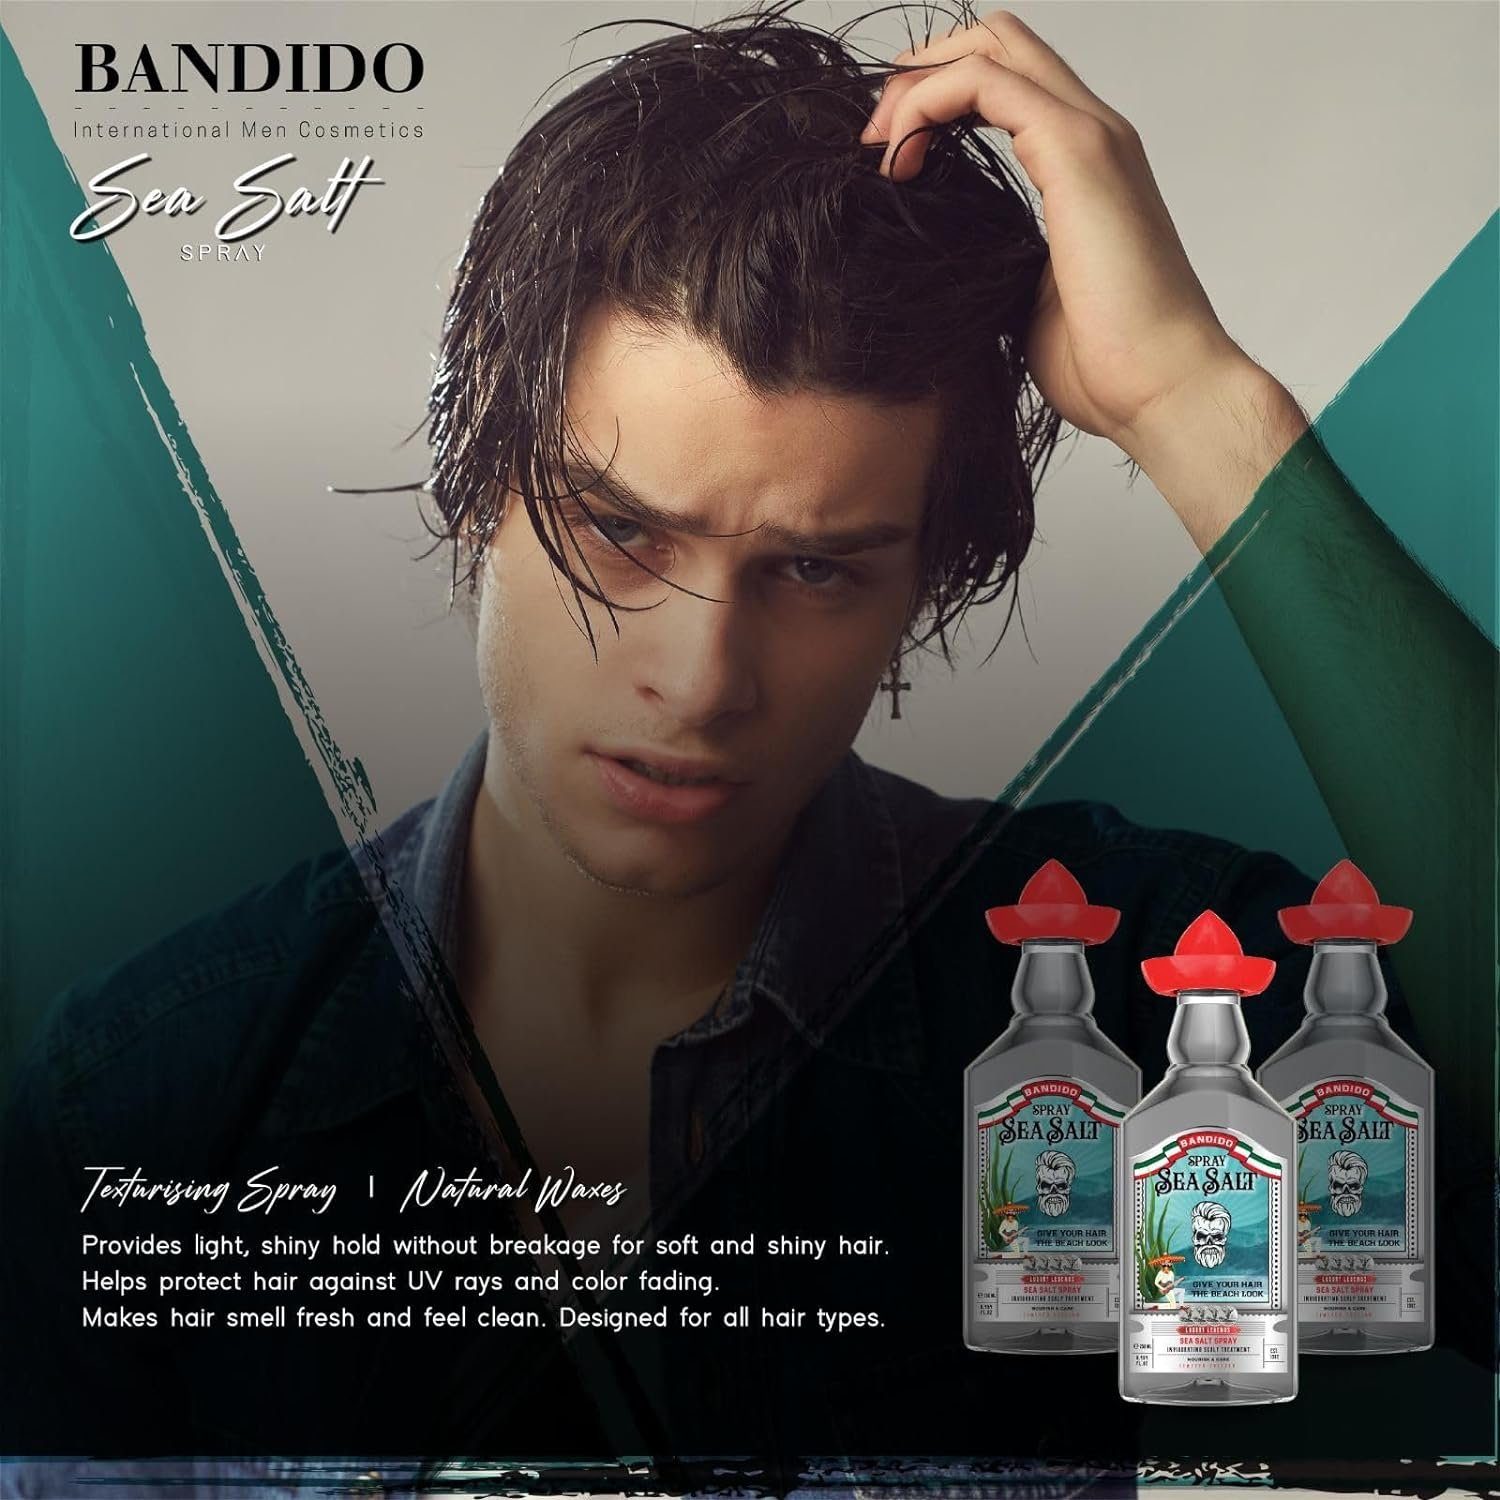 Bandido Spray Haarspray Hair Bandido Cosmetics Sea Haarspray Meersalz 250ml Salt